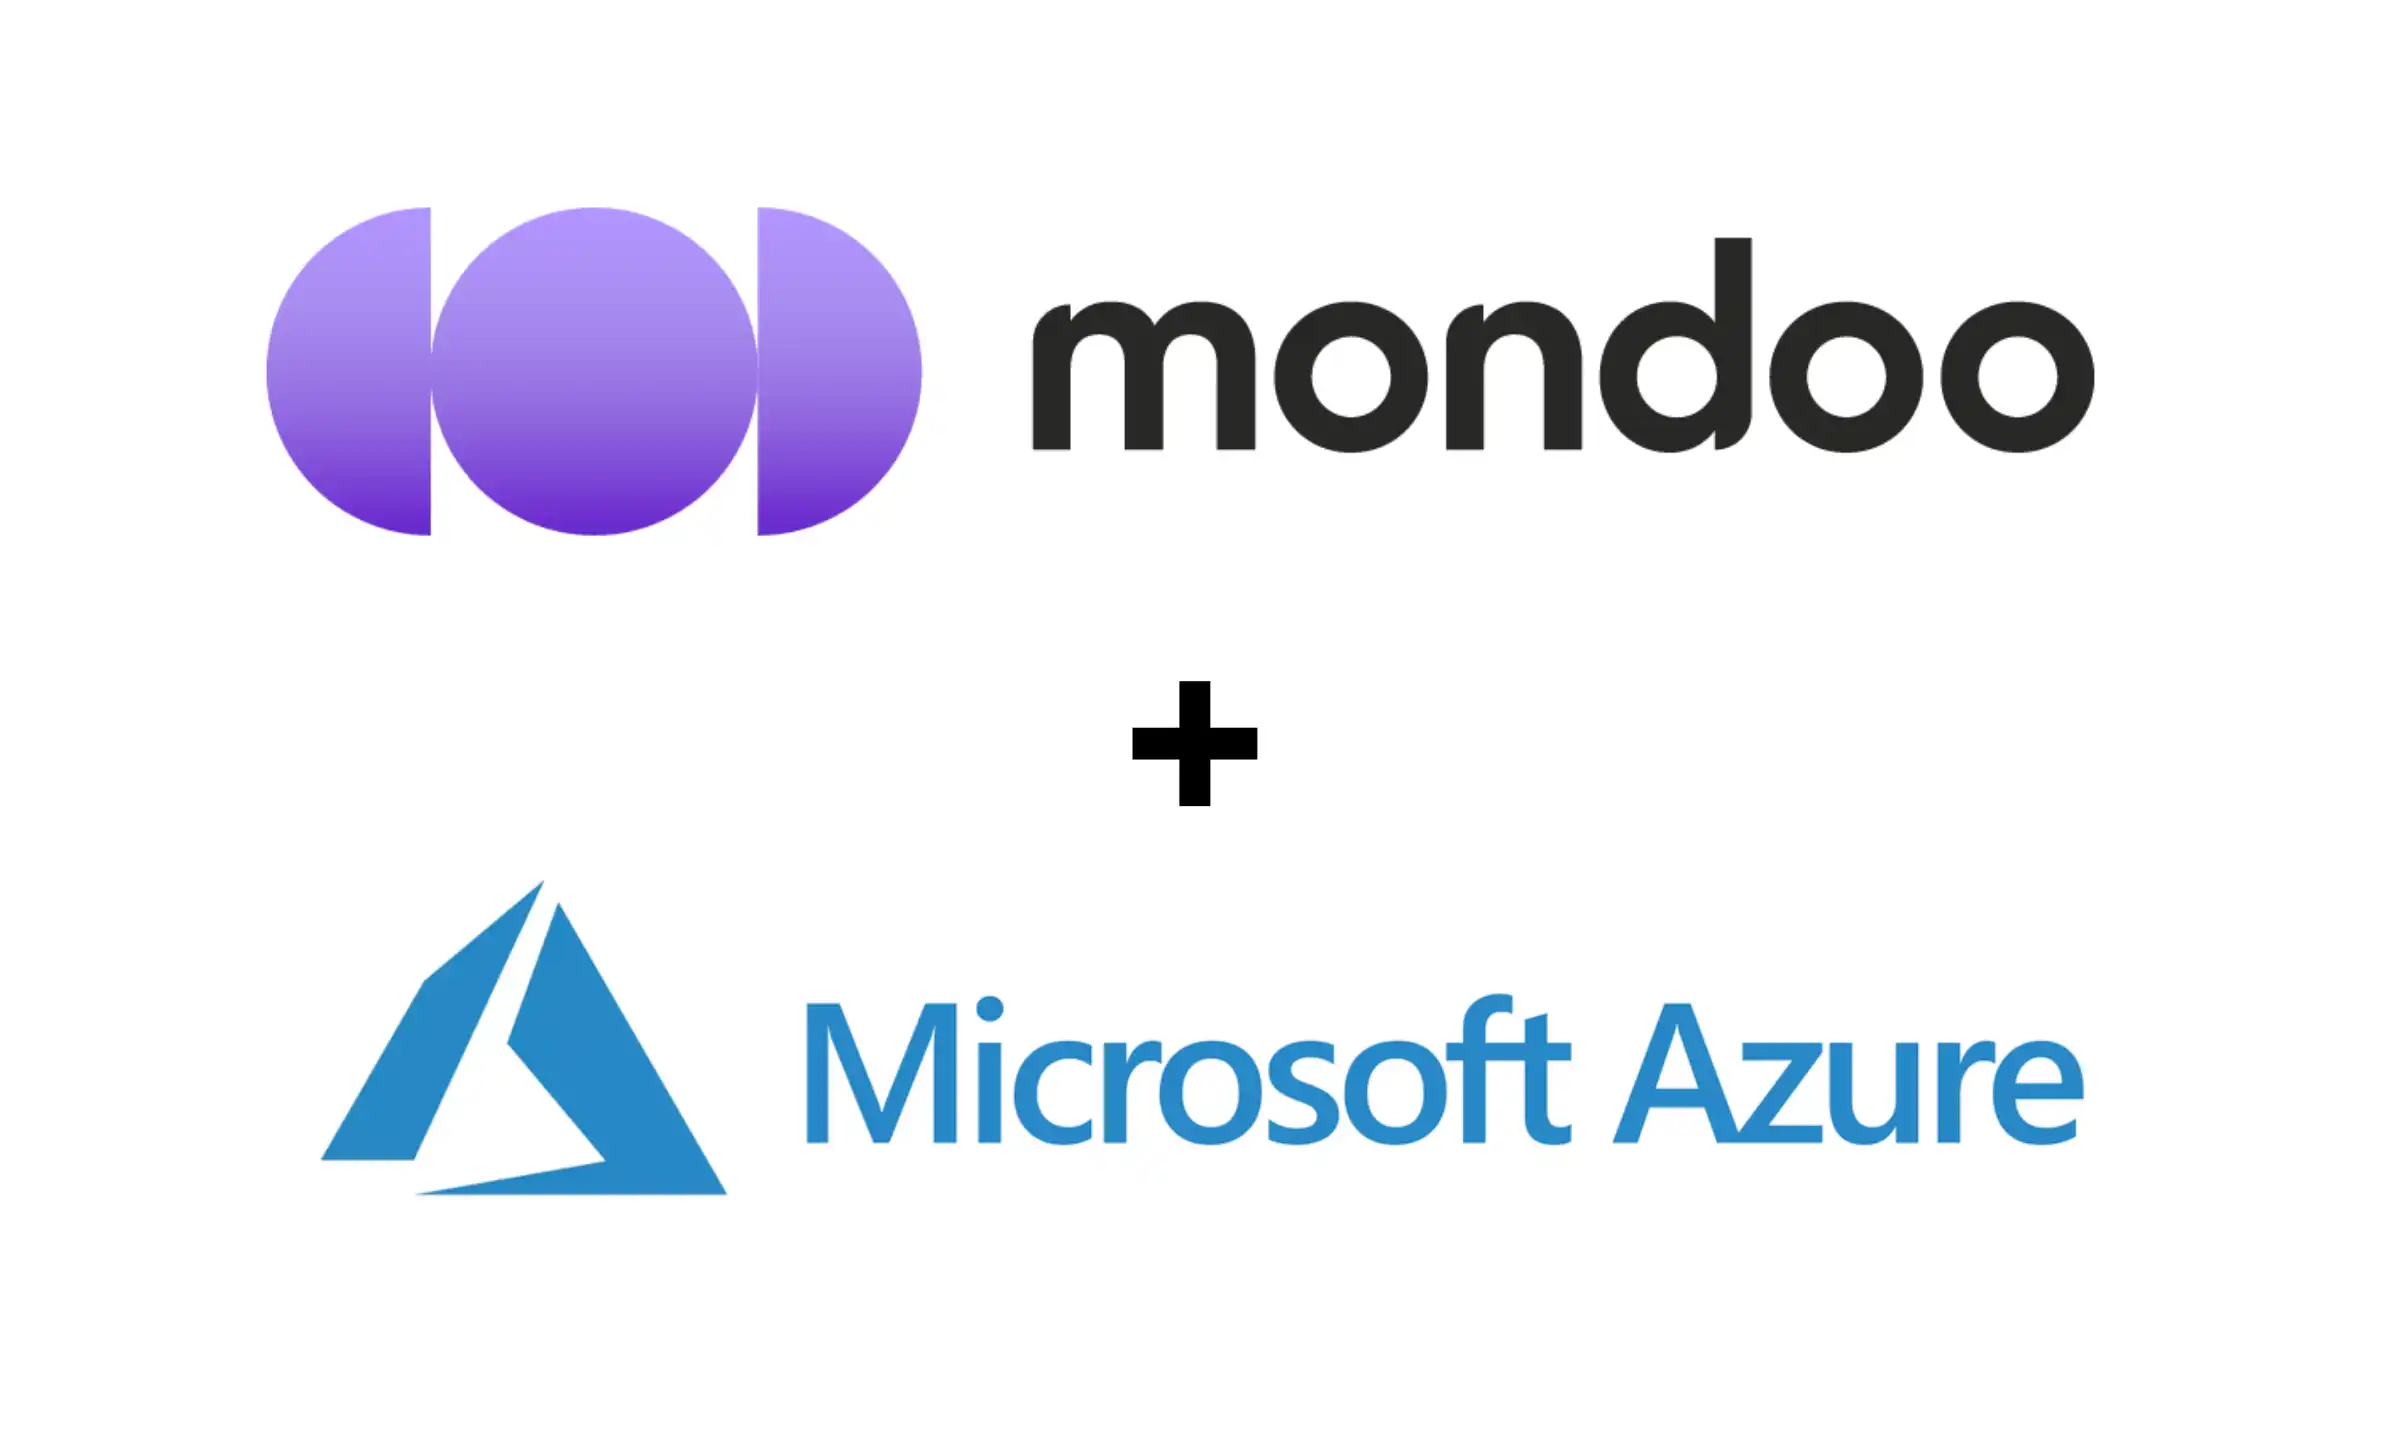 Mondoo and Microsoft Azure